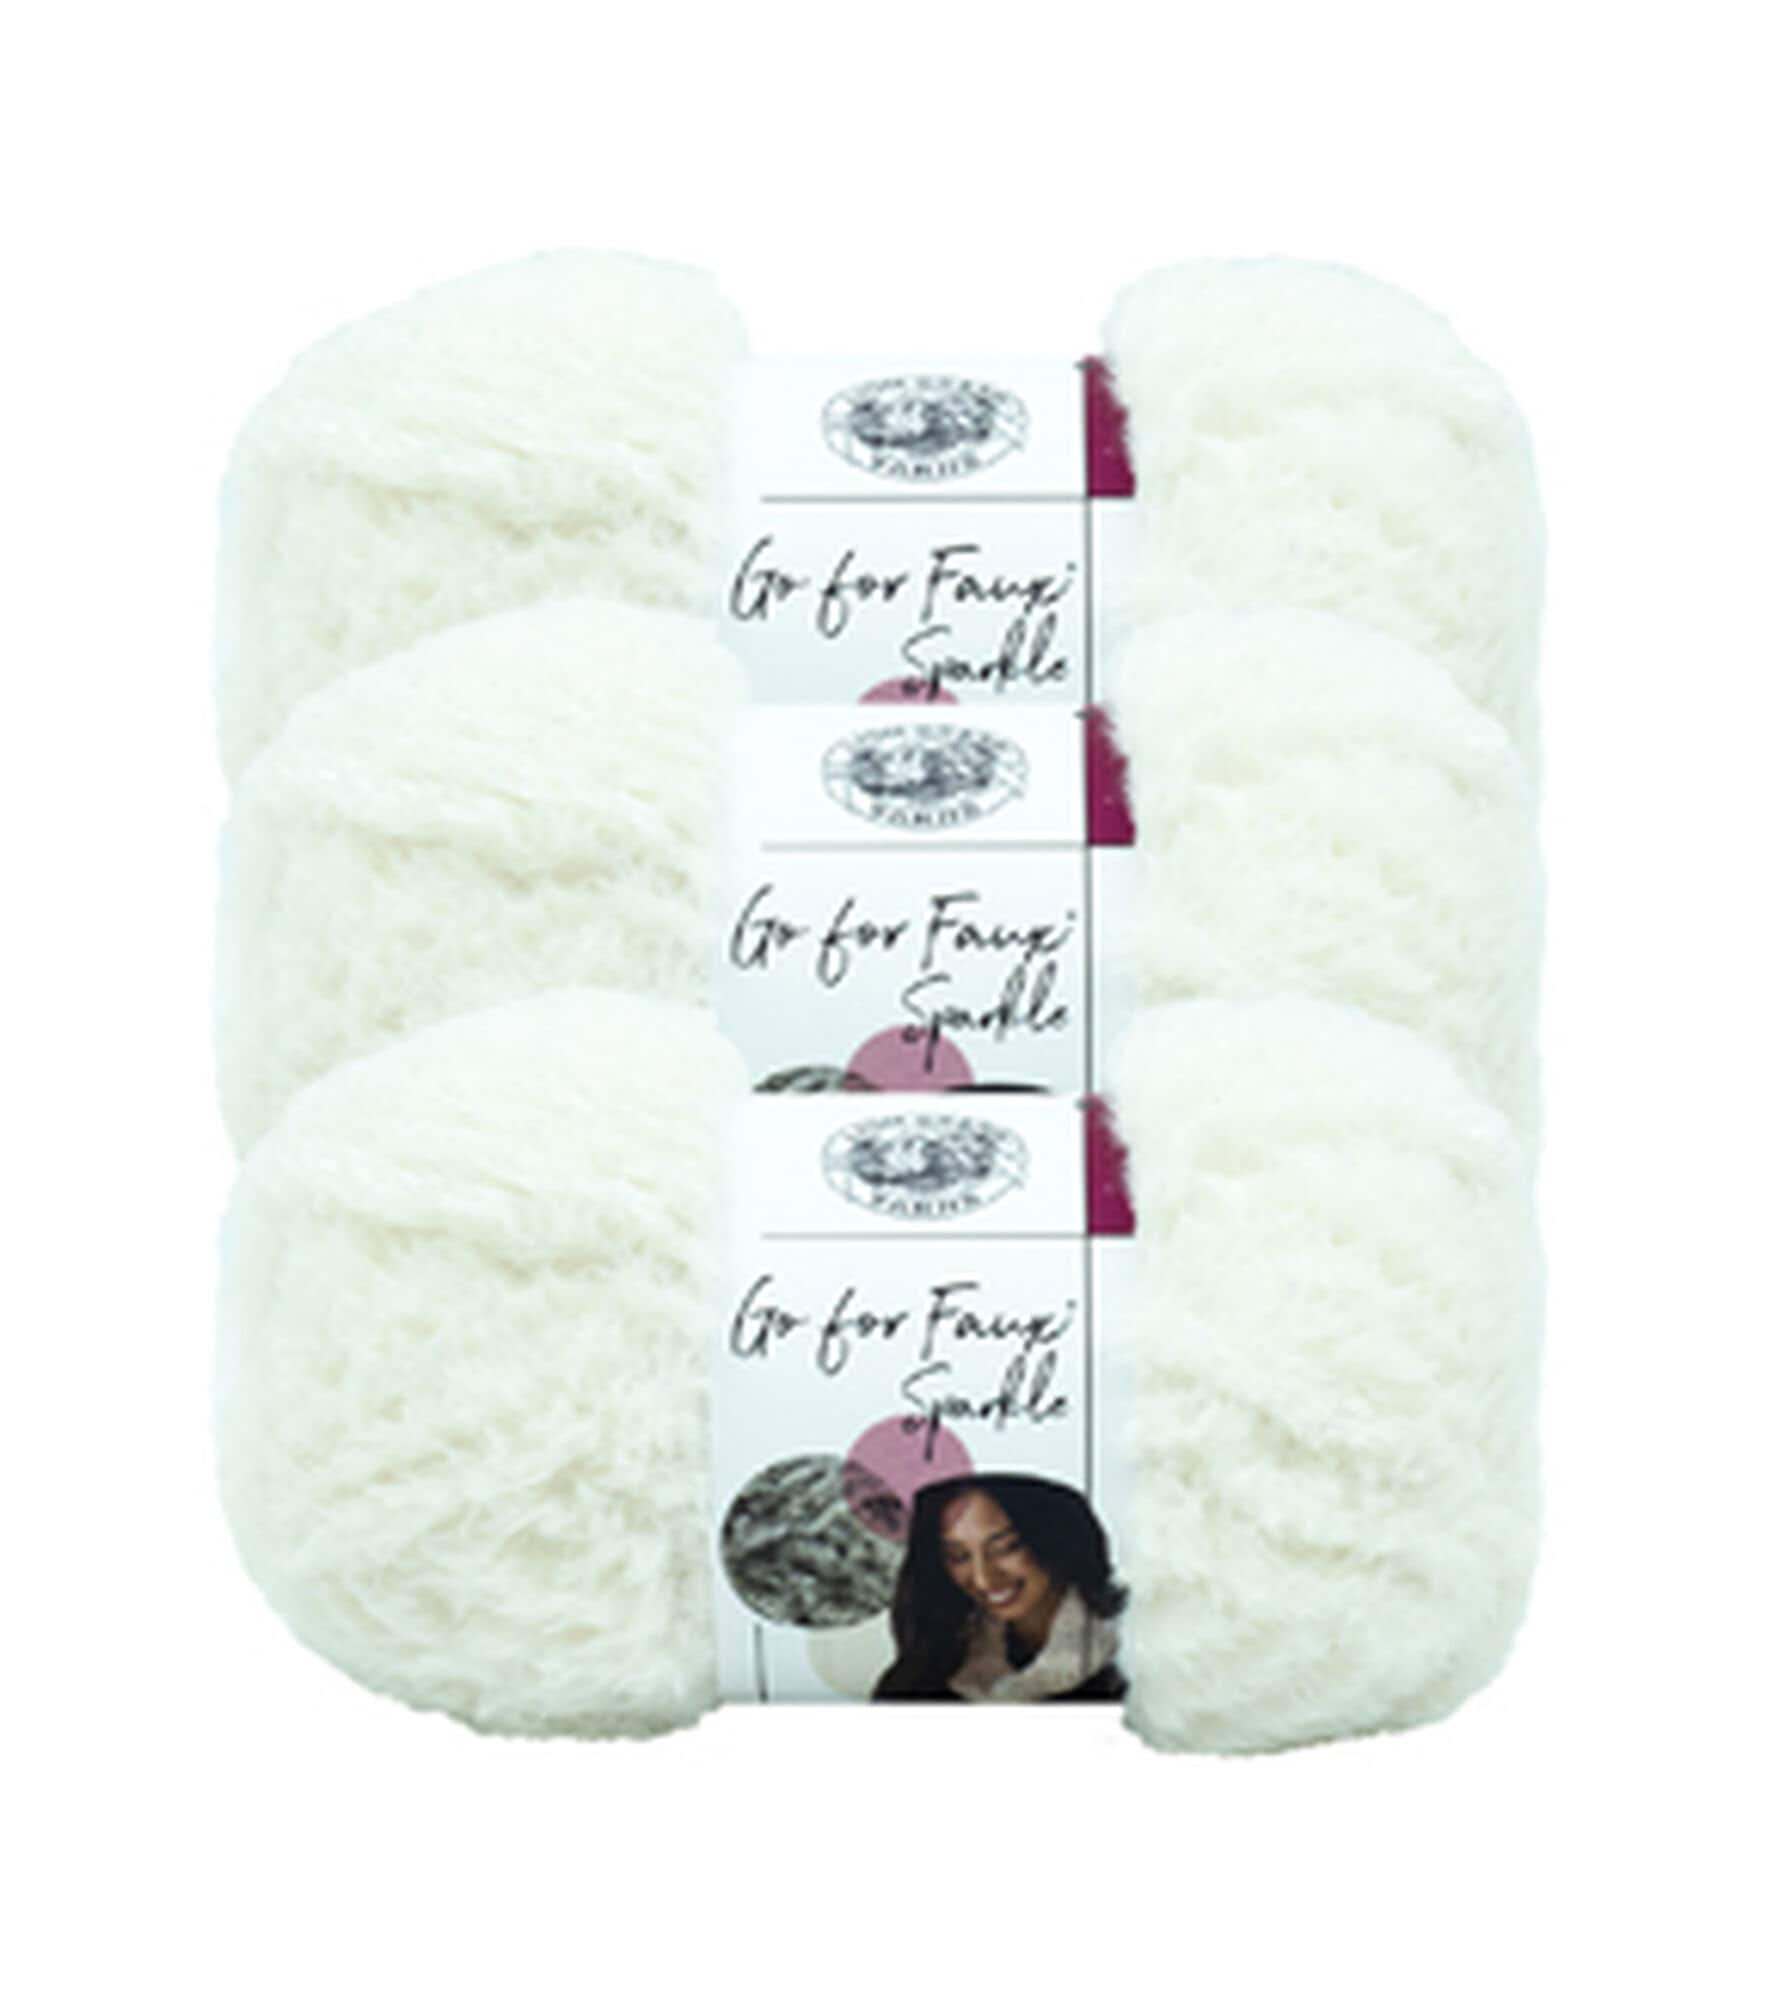 NICEEC 2 Skeins Super Soft Fur Yarn Chunky Fluffy Faux Fur Yarn Eyelash  Yarn for Crochet Knit total Length 232m235yds,50g2 